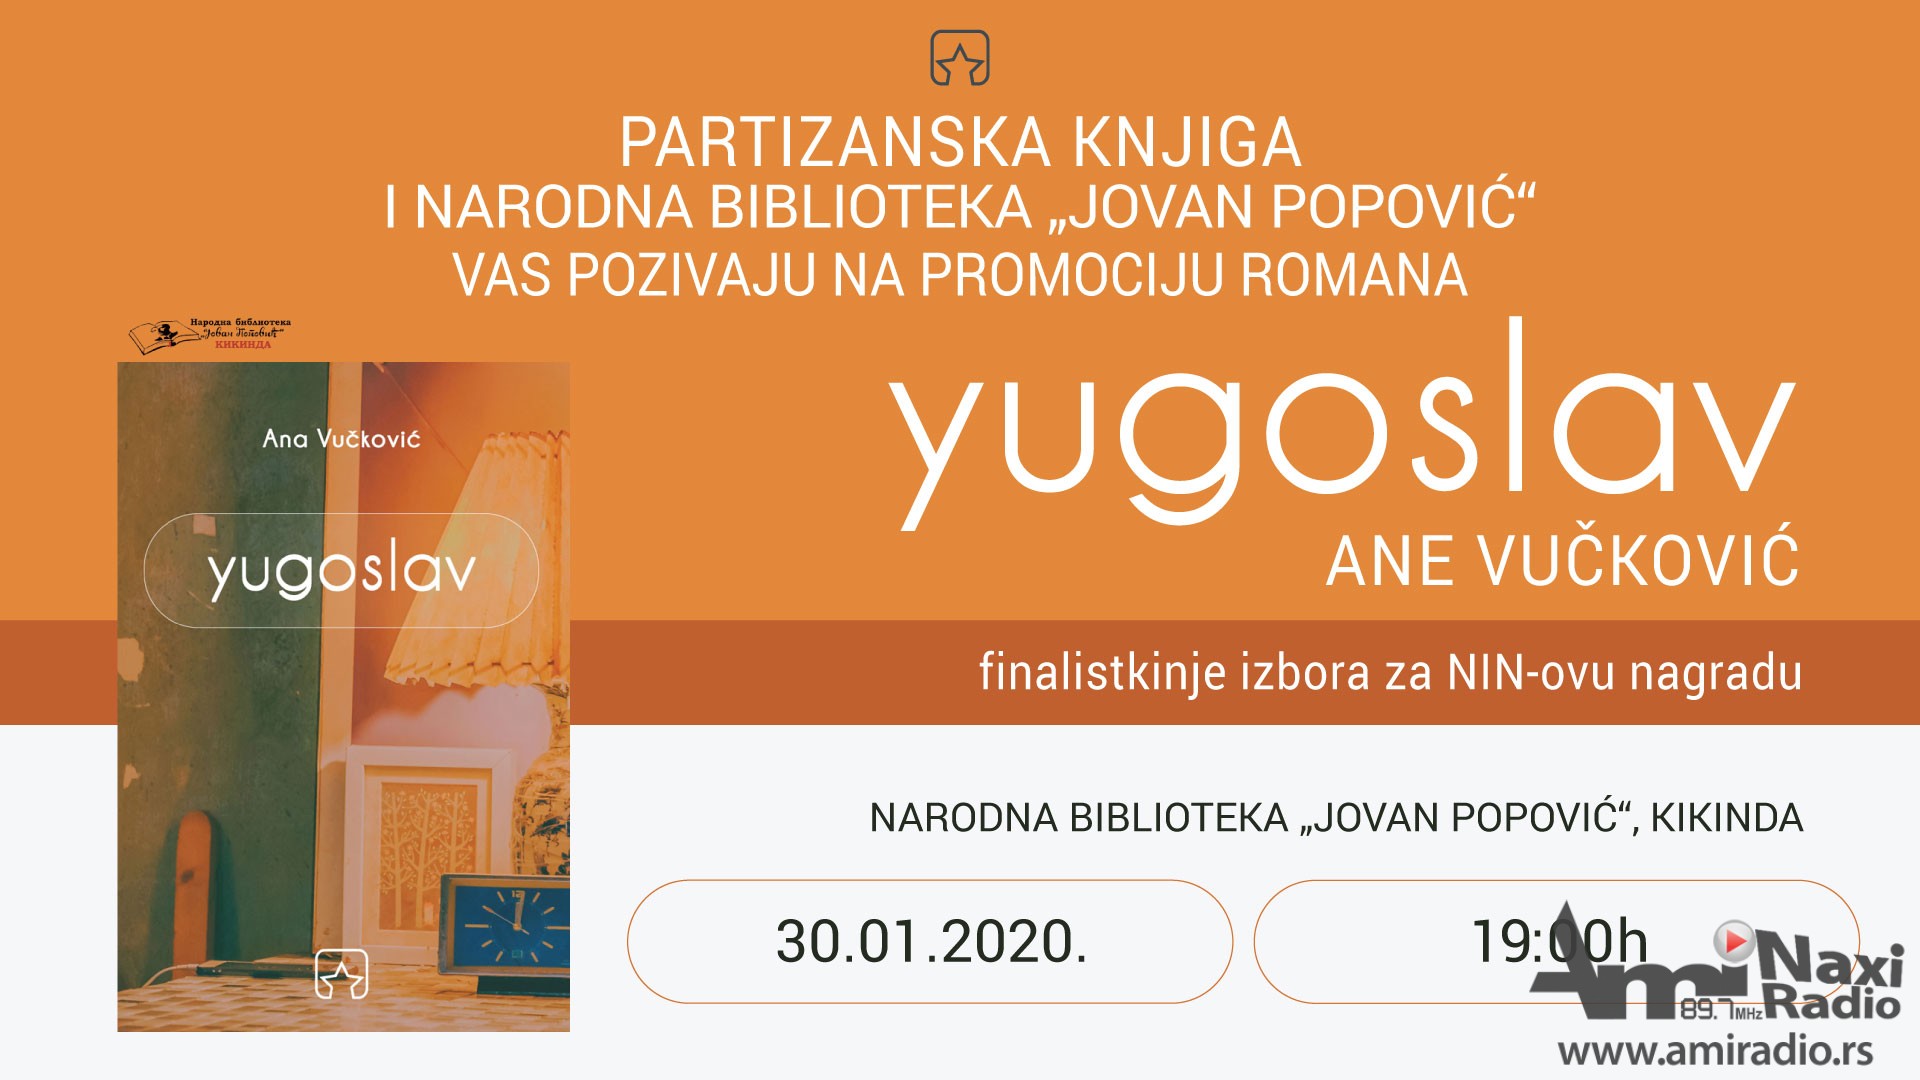 Promocija romana „Yugoslav“ u četvrtak u Biblioteci